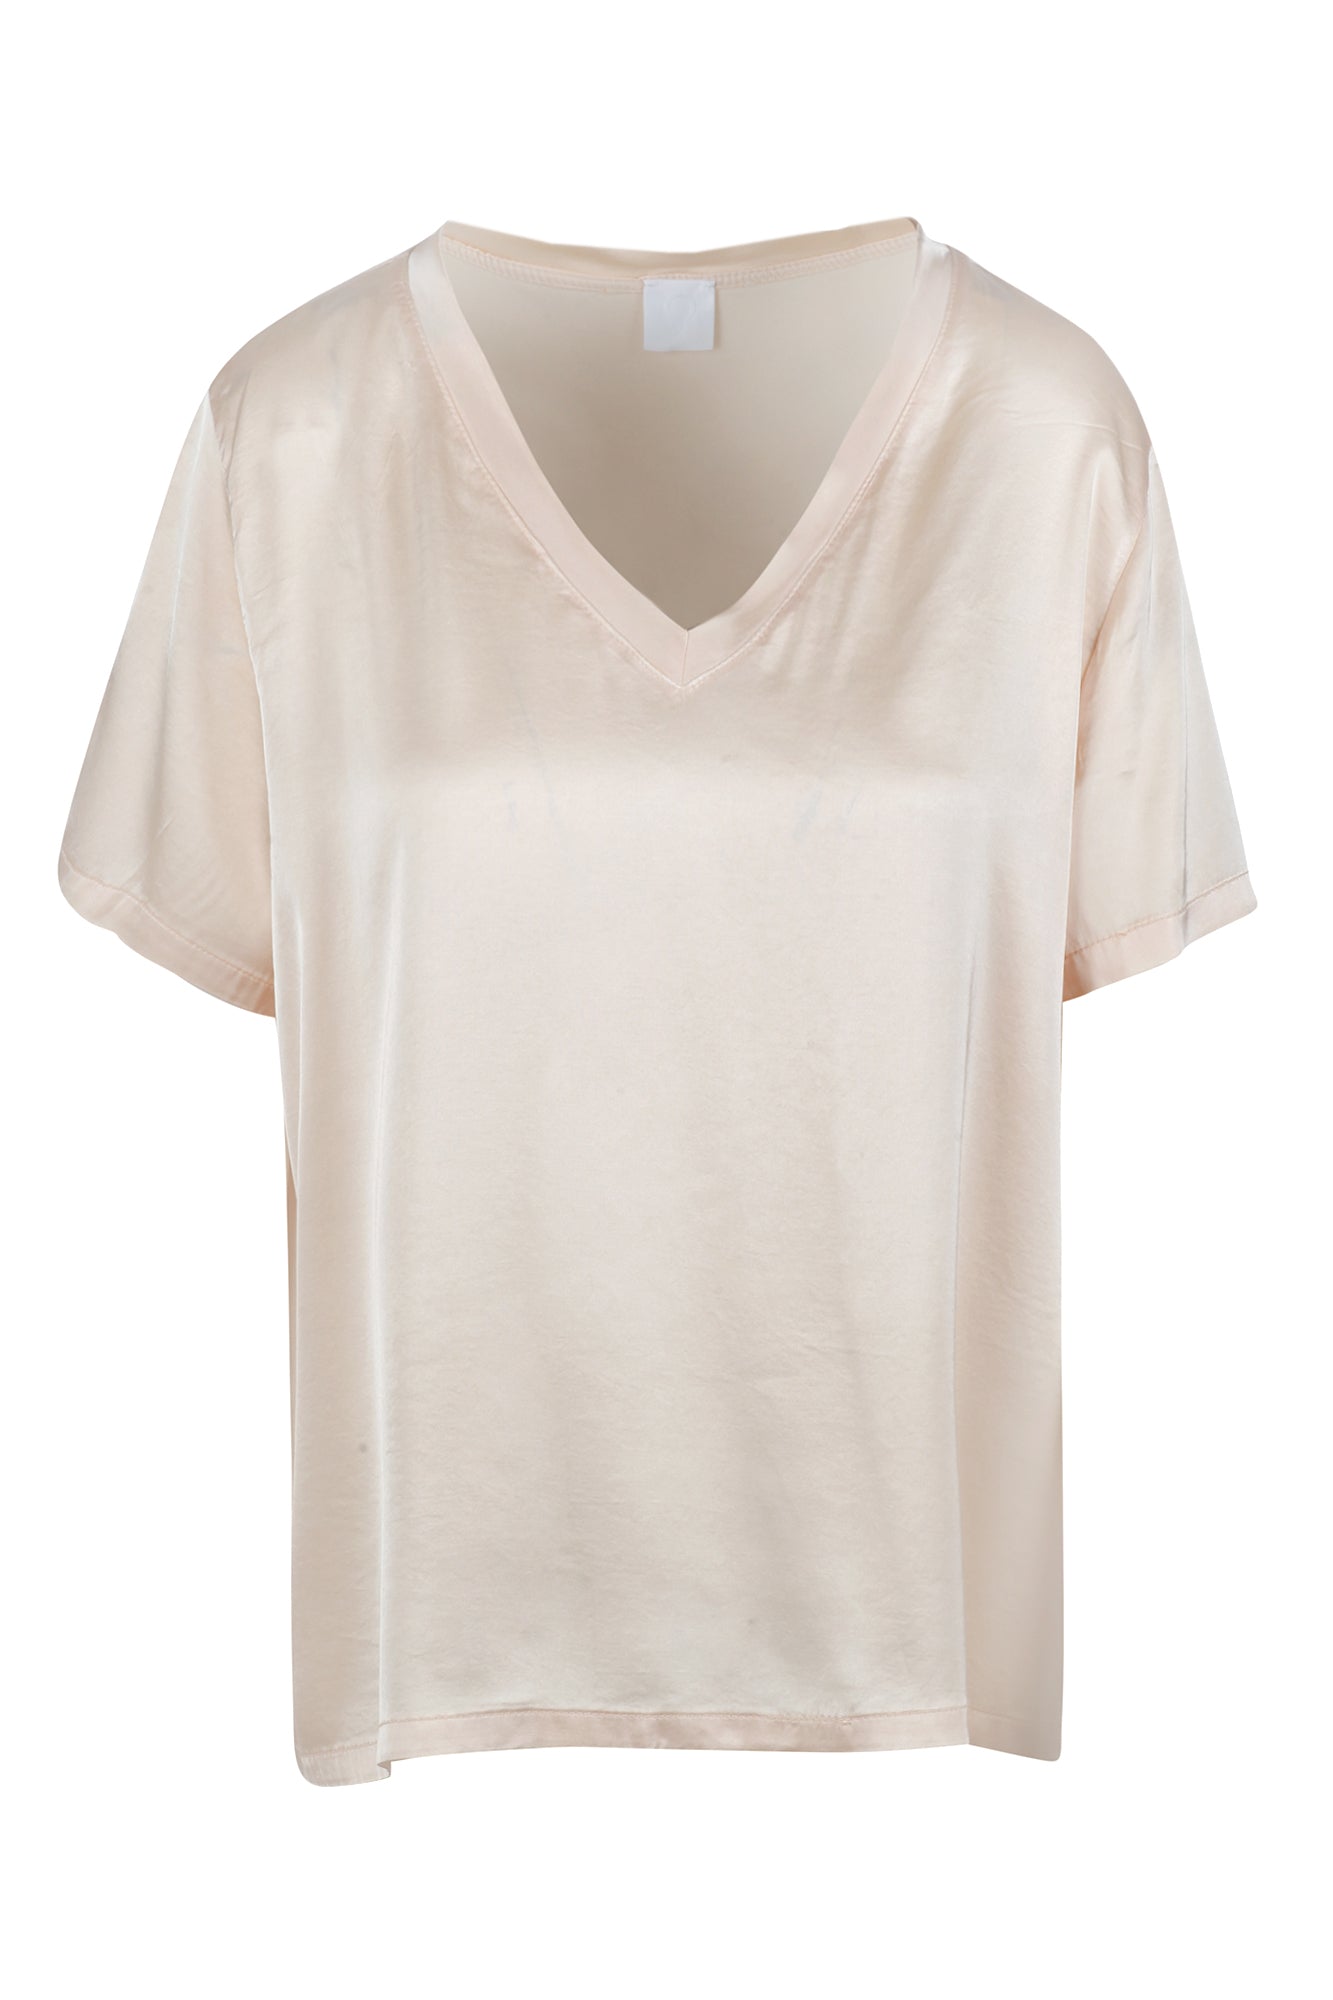 La Femme Blanche - T-shirt - 431589 - Rosa